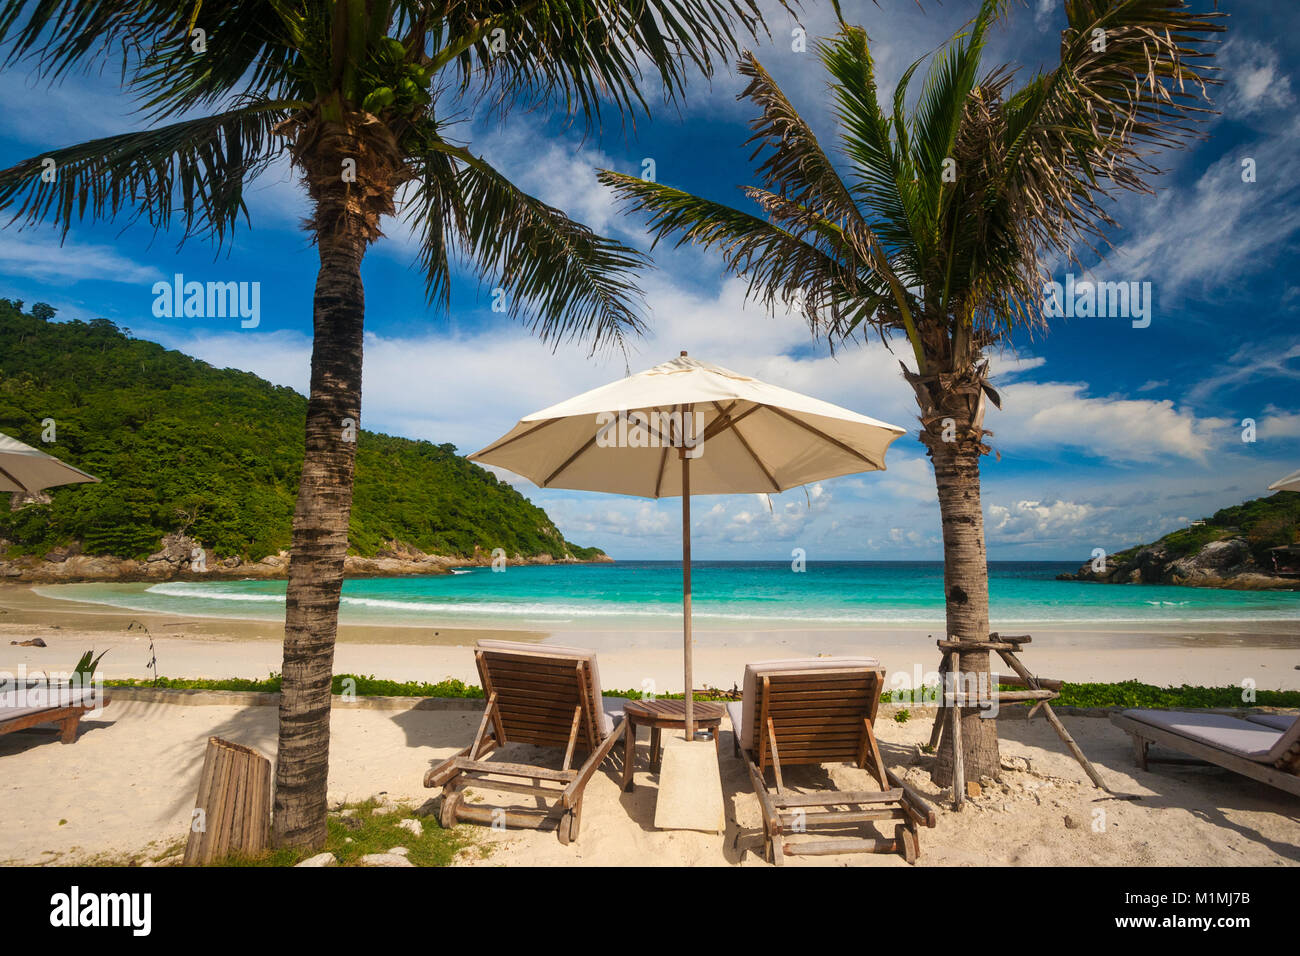 Una tipica vacanza bella scena con due sdraio e un ombrellone in tra, fiancheggiata da palme, offre una fantastica vista della spiaggia. Foto Stock